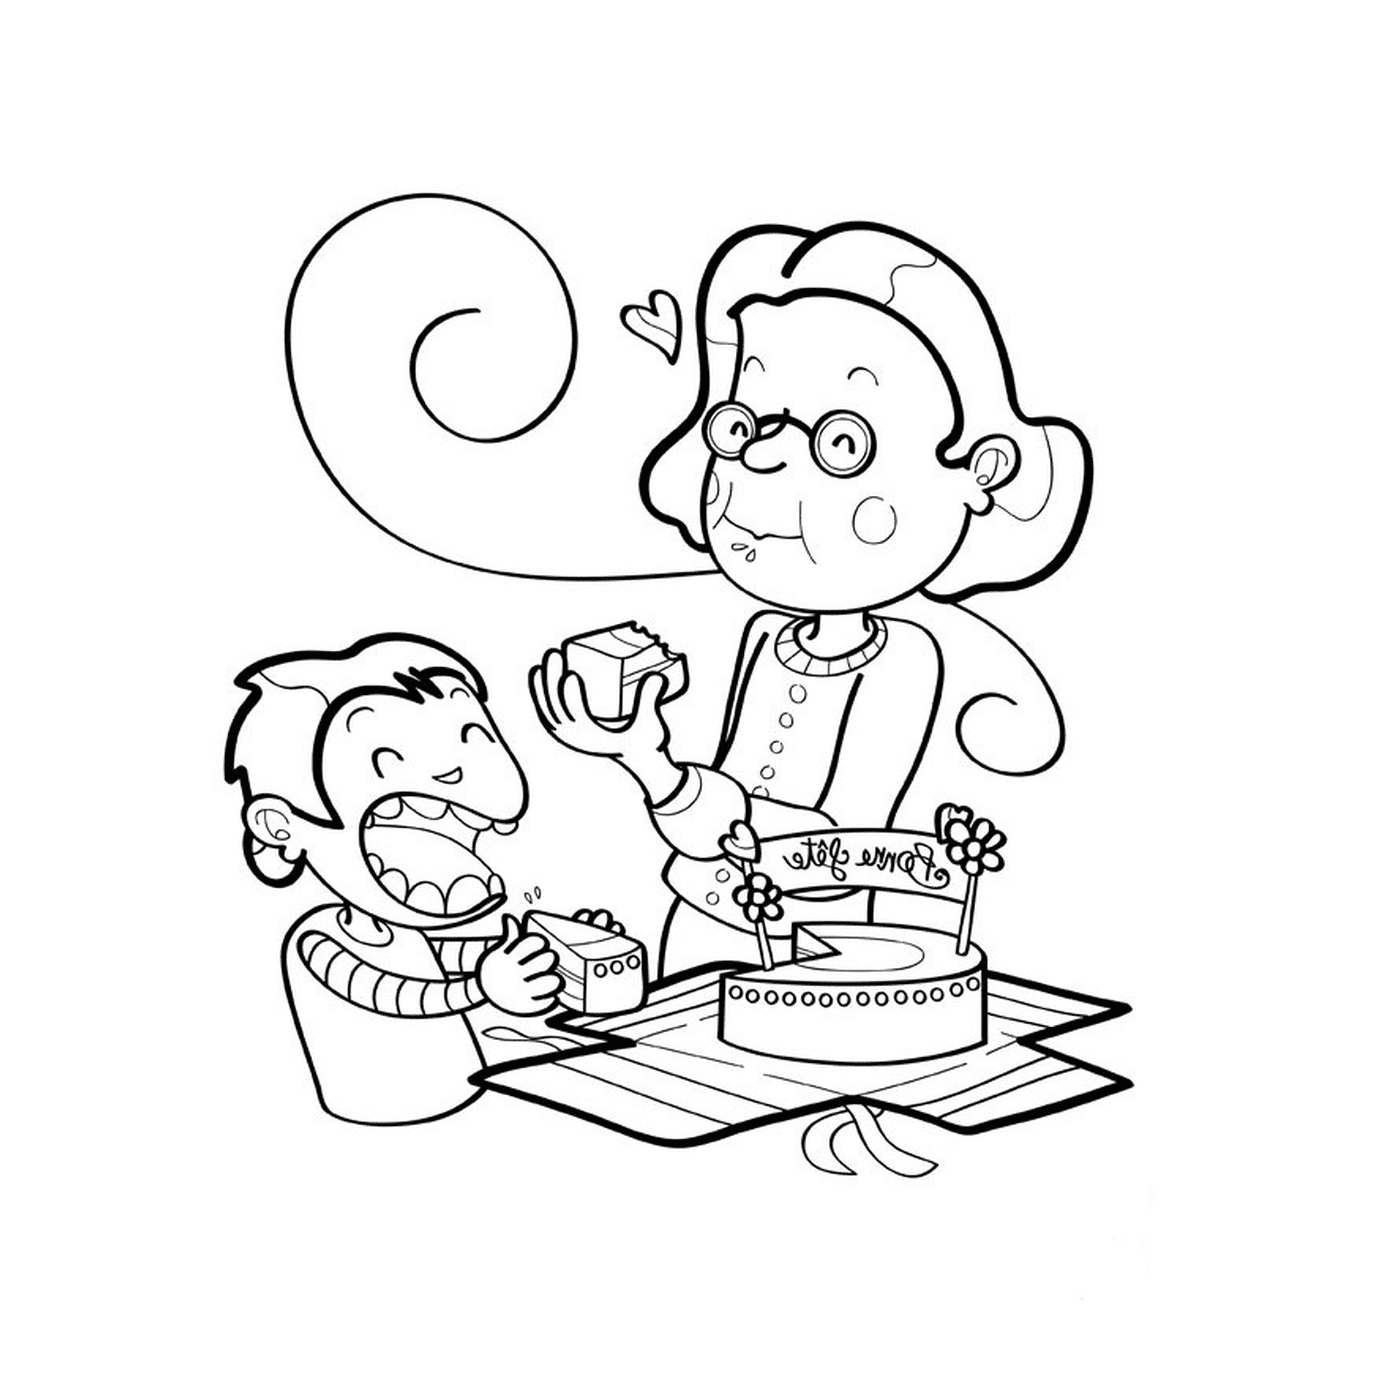  Пожилая женщина и обезьяна едят торт 